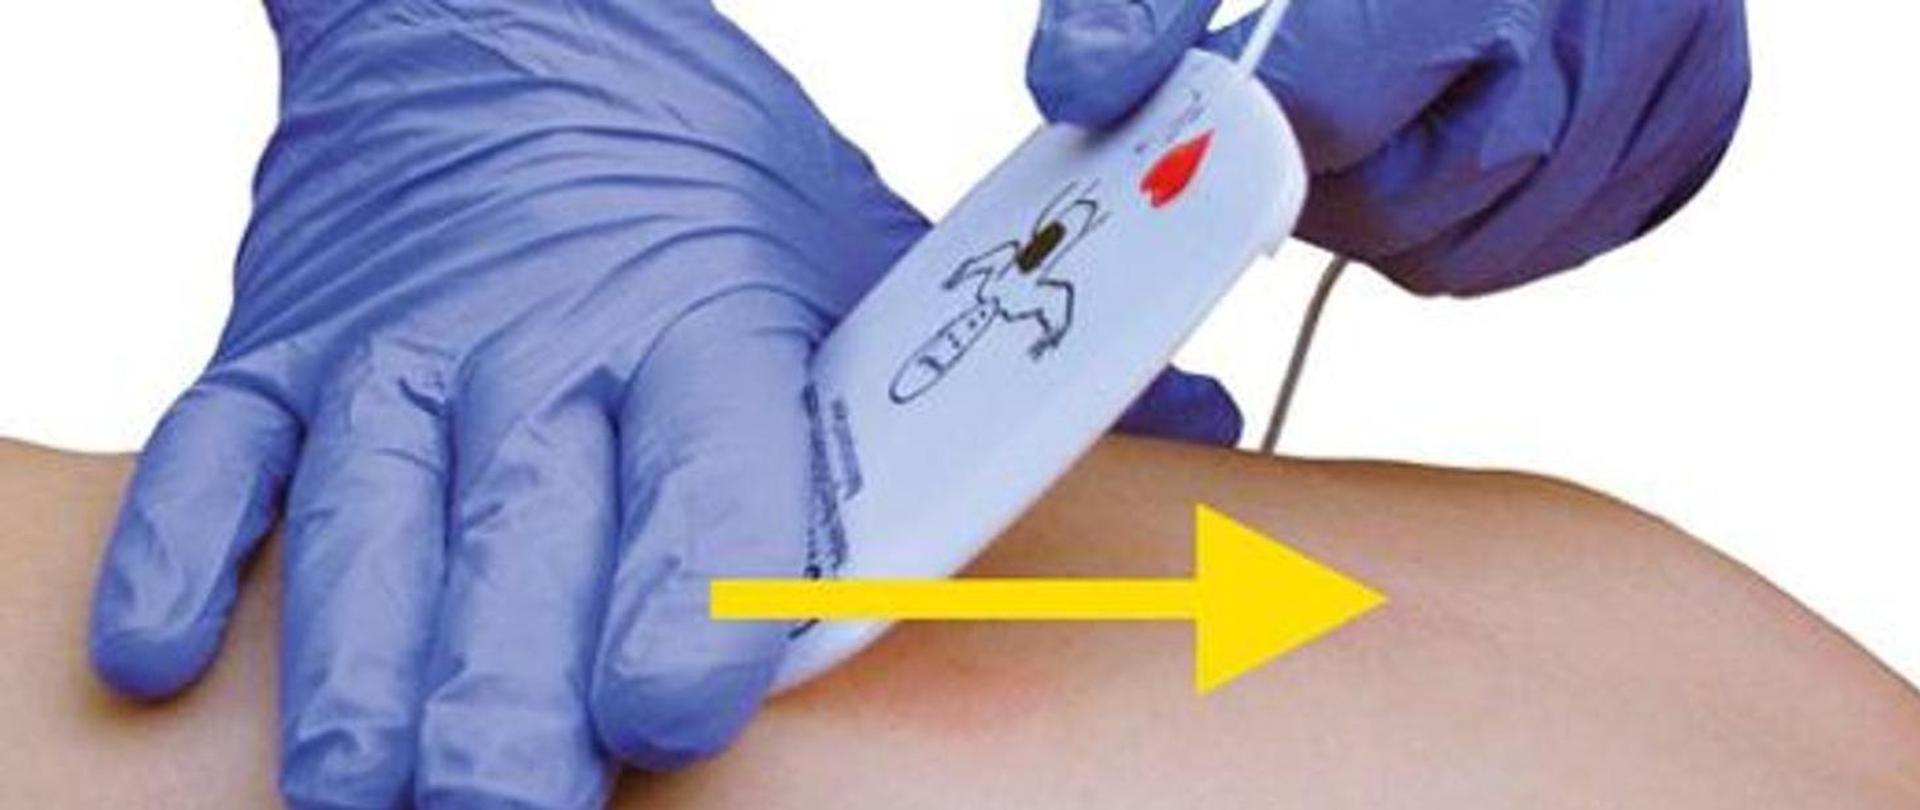 Obraz pokazuje przymocowanie elektrody defibrylatora na ciele człowieka